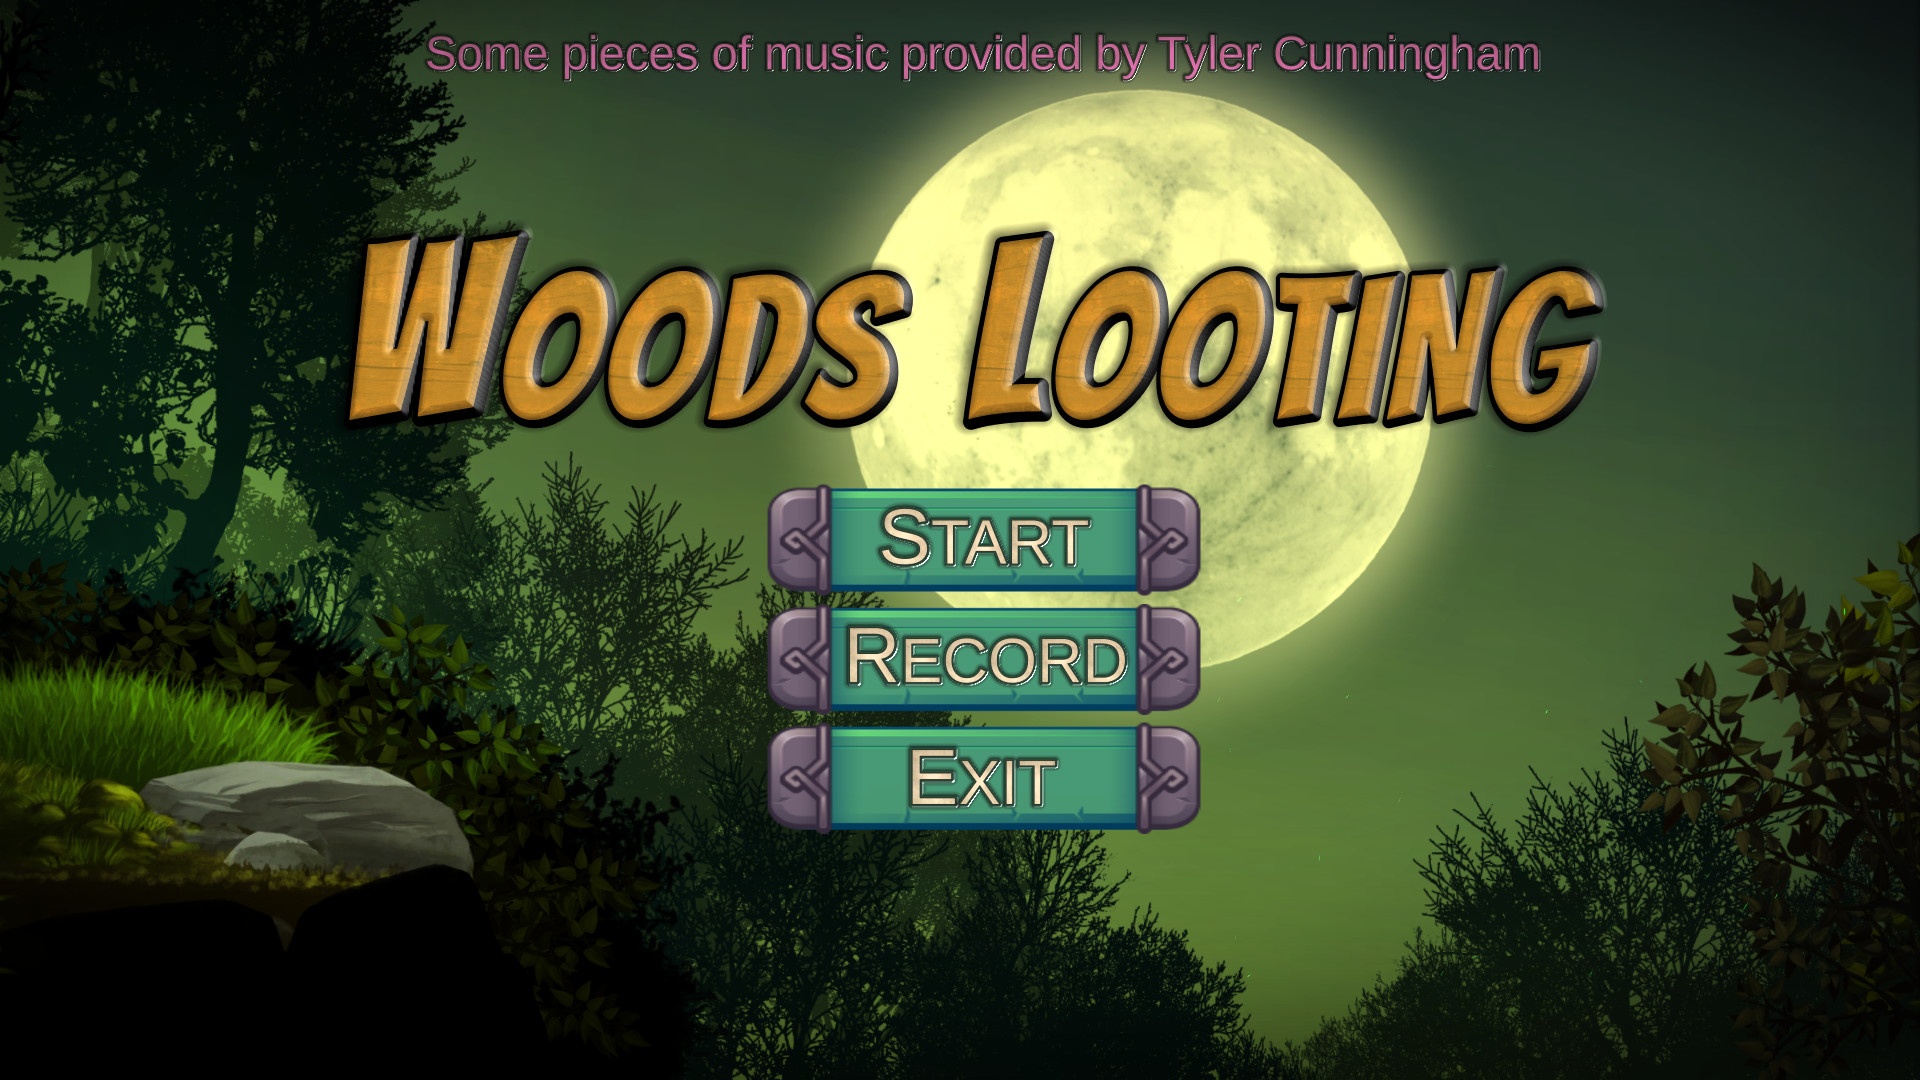 丛林掠夺/Woods Looting Free Download